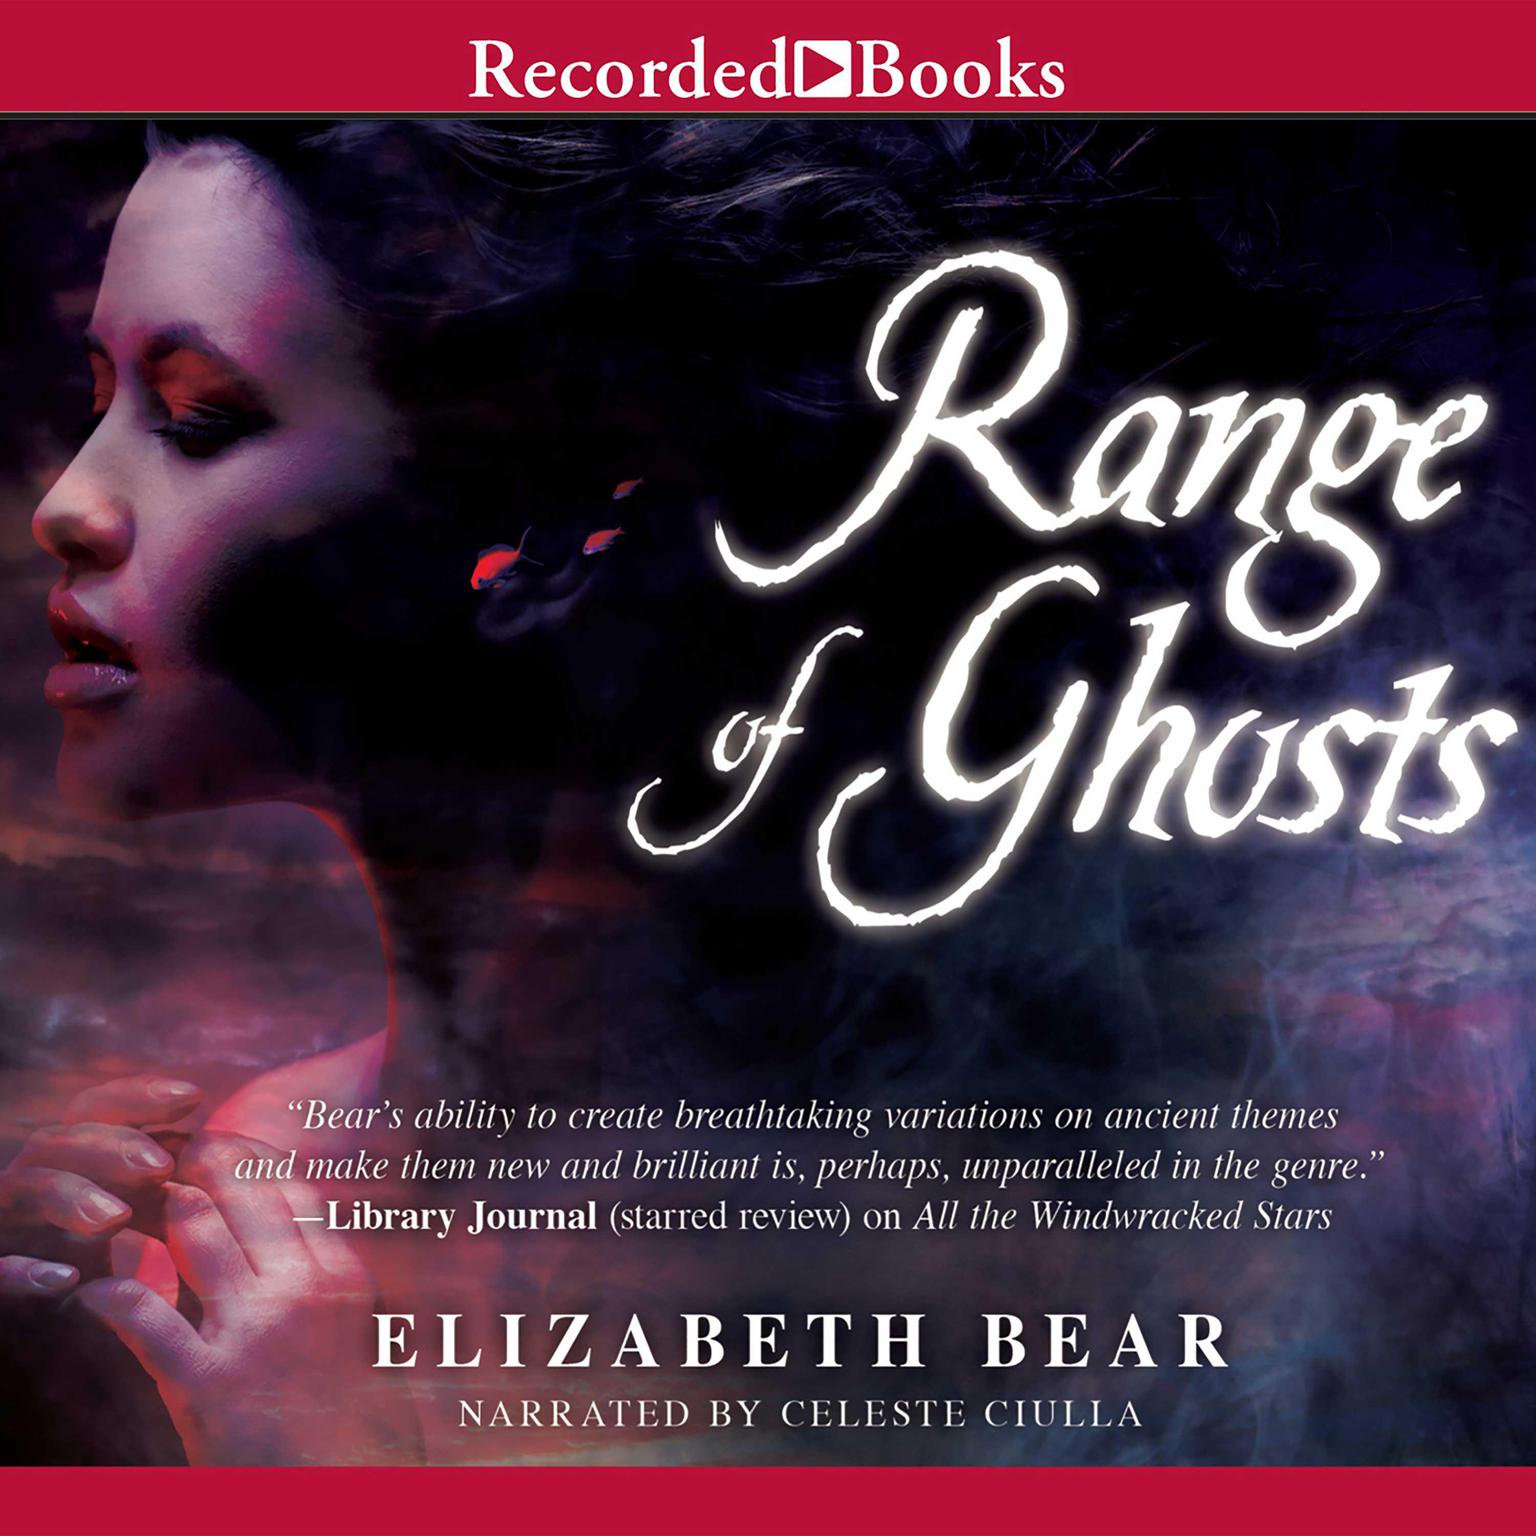 Range of Ghosts Audiobook, by Elizabeth Bear